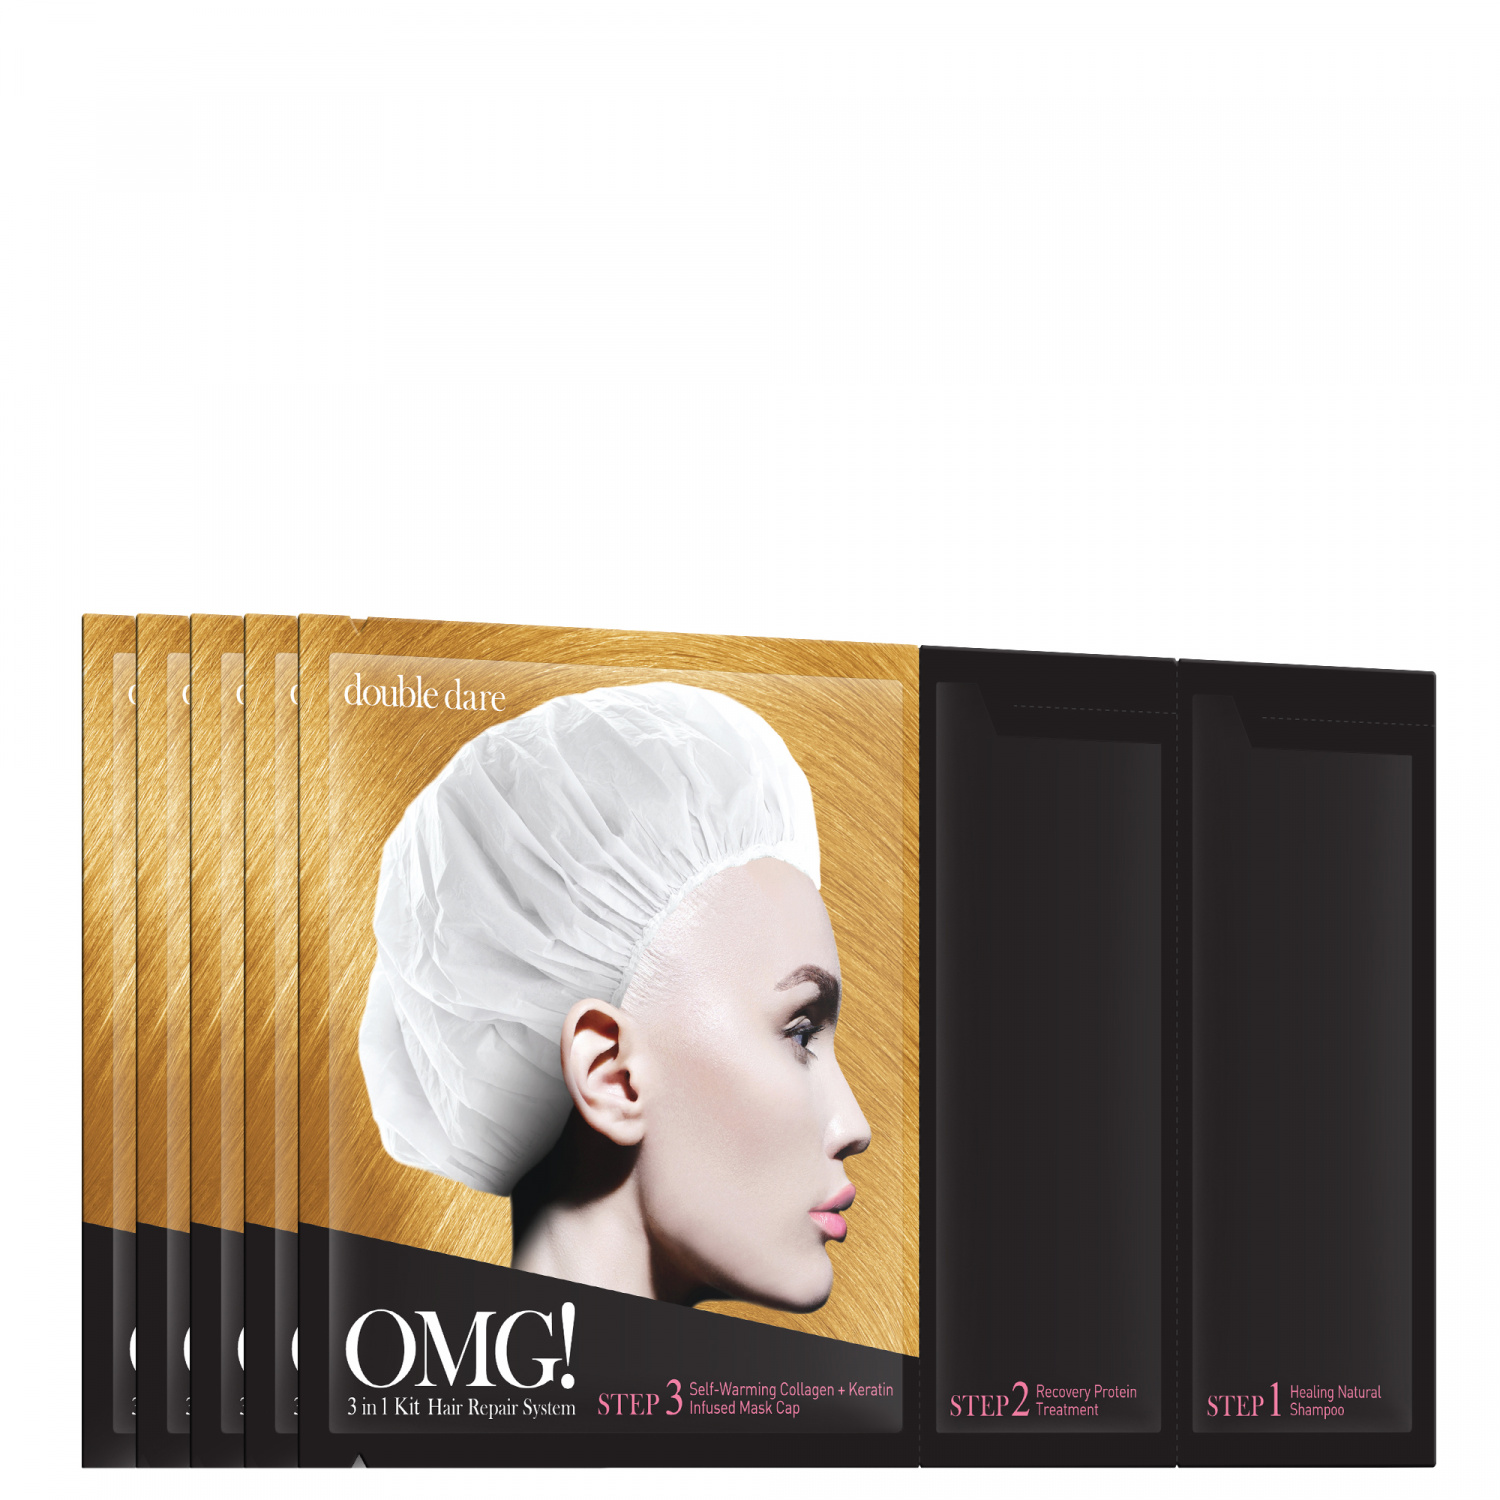 Double Dare OMG! 3in1 Kit Hair Repair System 5p - интернет-магазин профессиональной косметики Spadream, изображение 40702